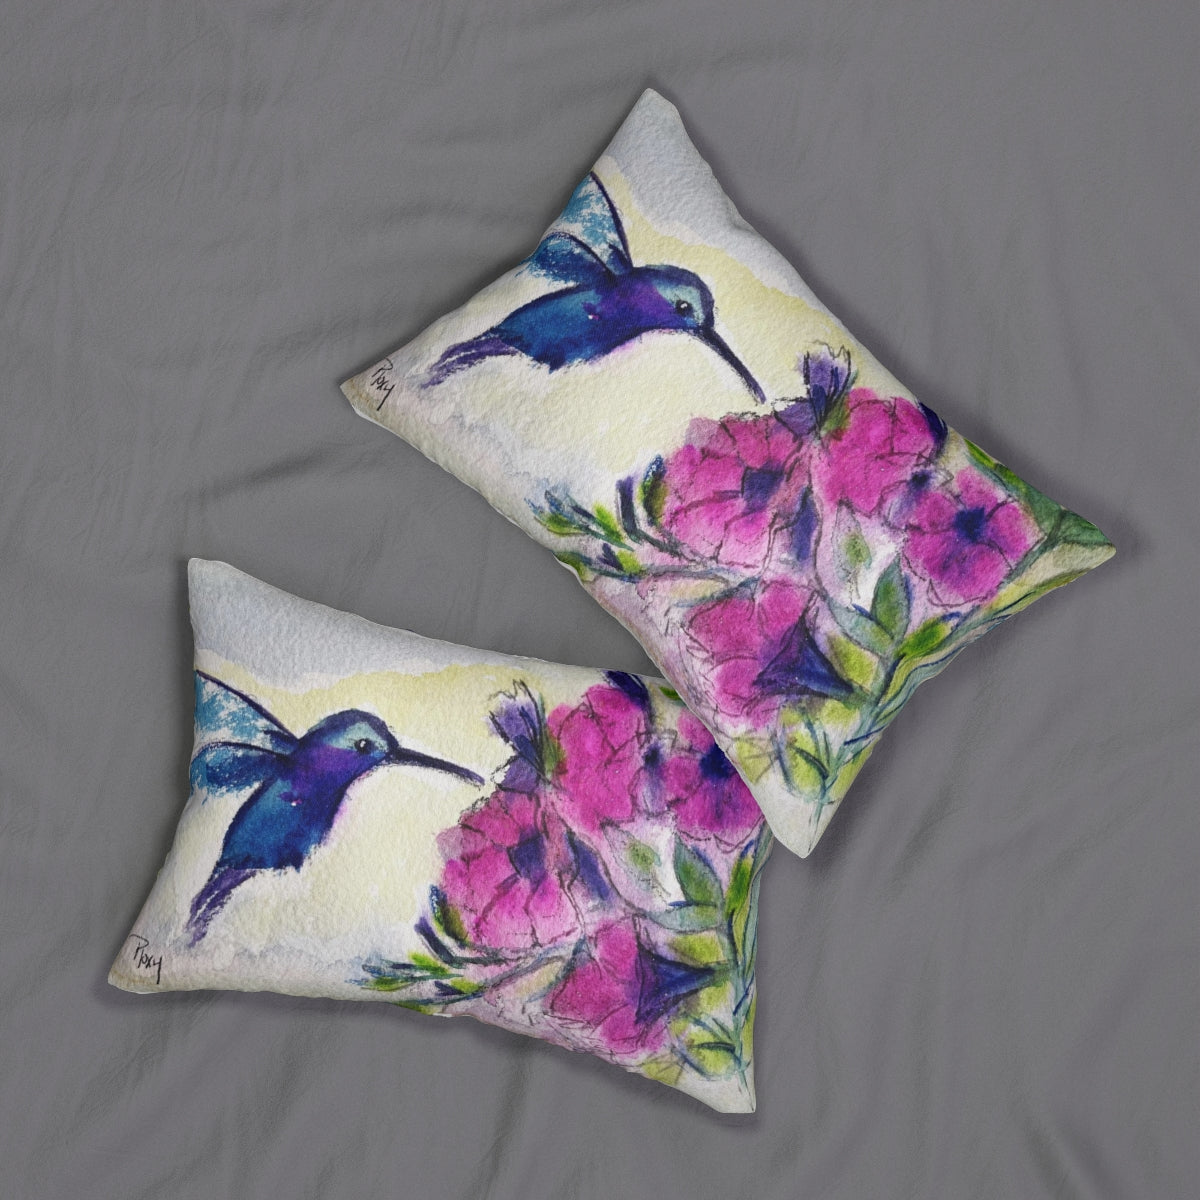 Hummingbird with Pink Flowers Lumbar Pillow